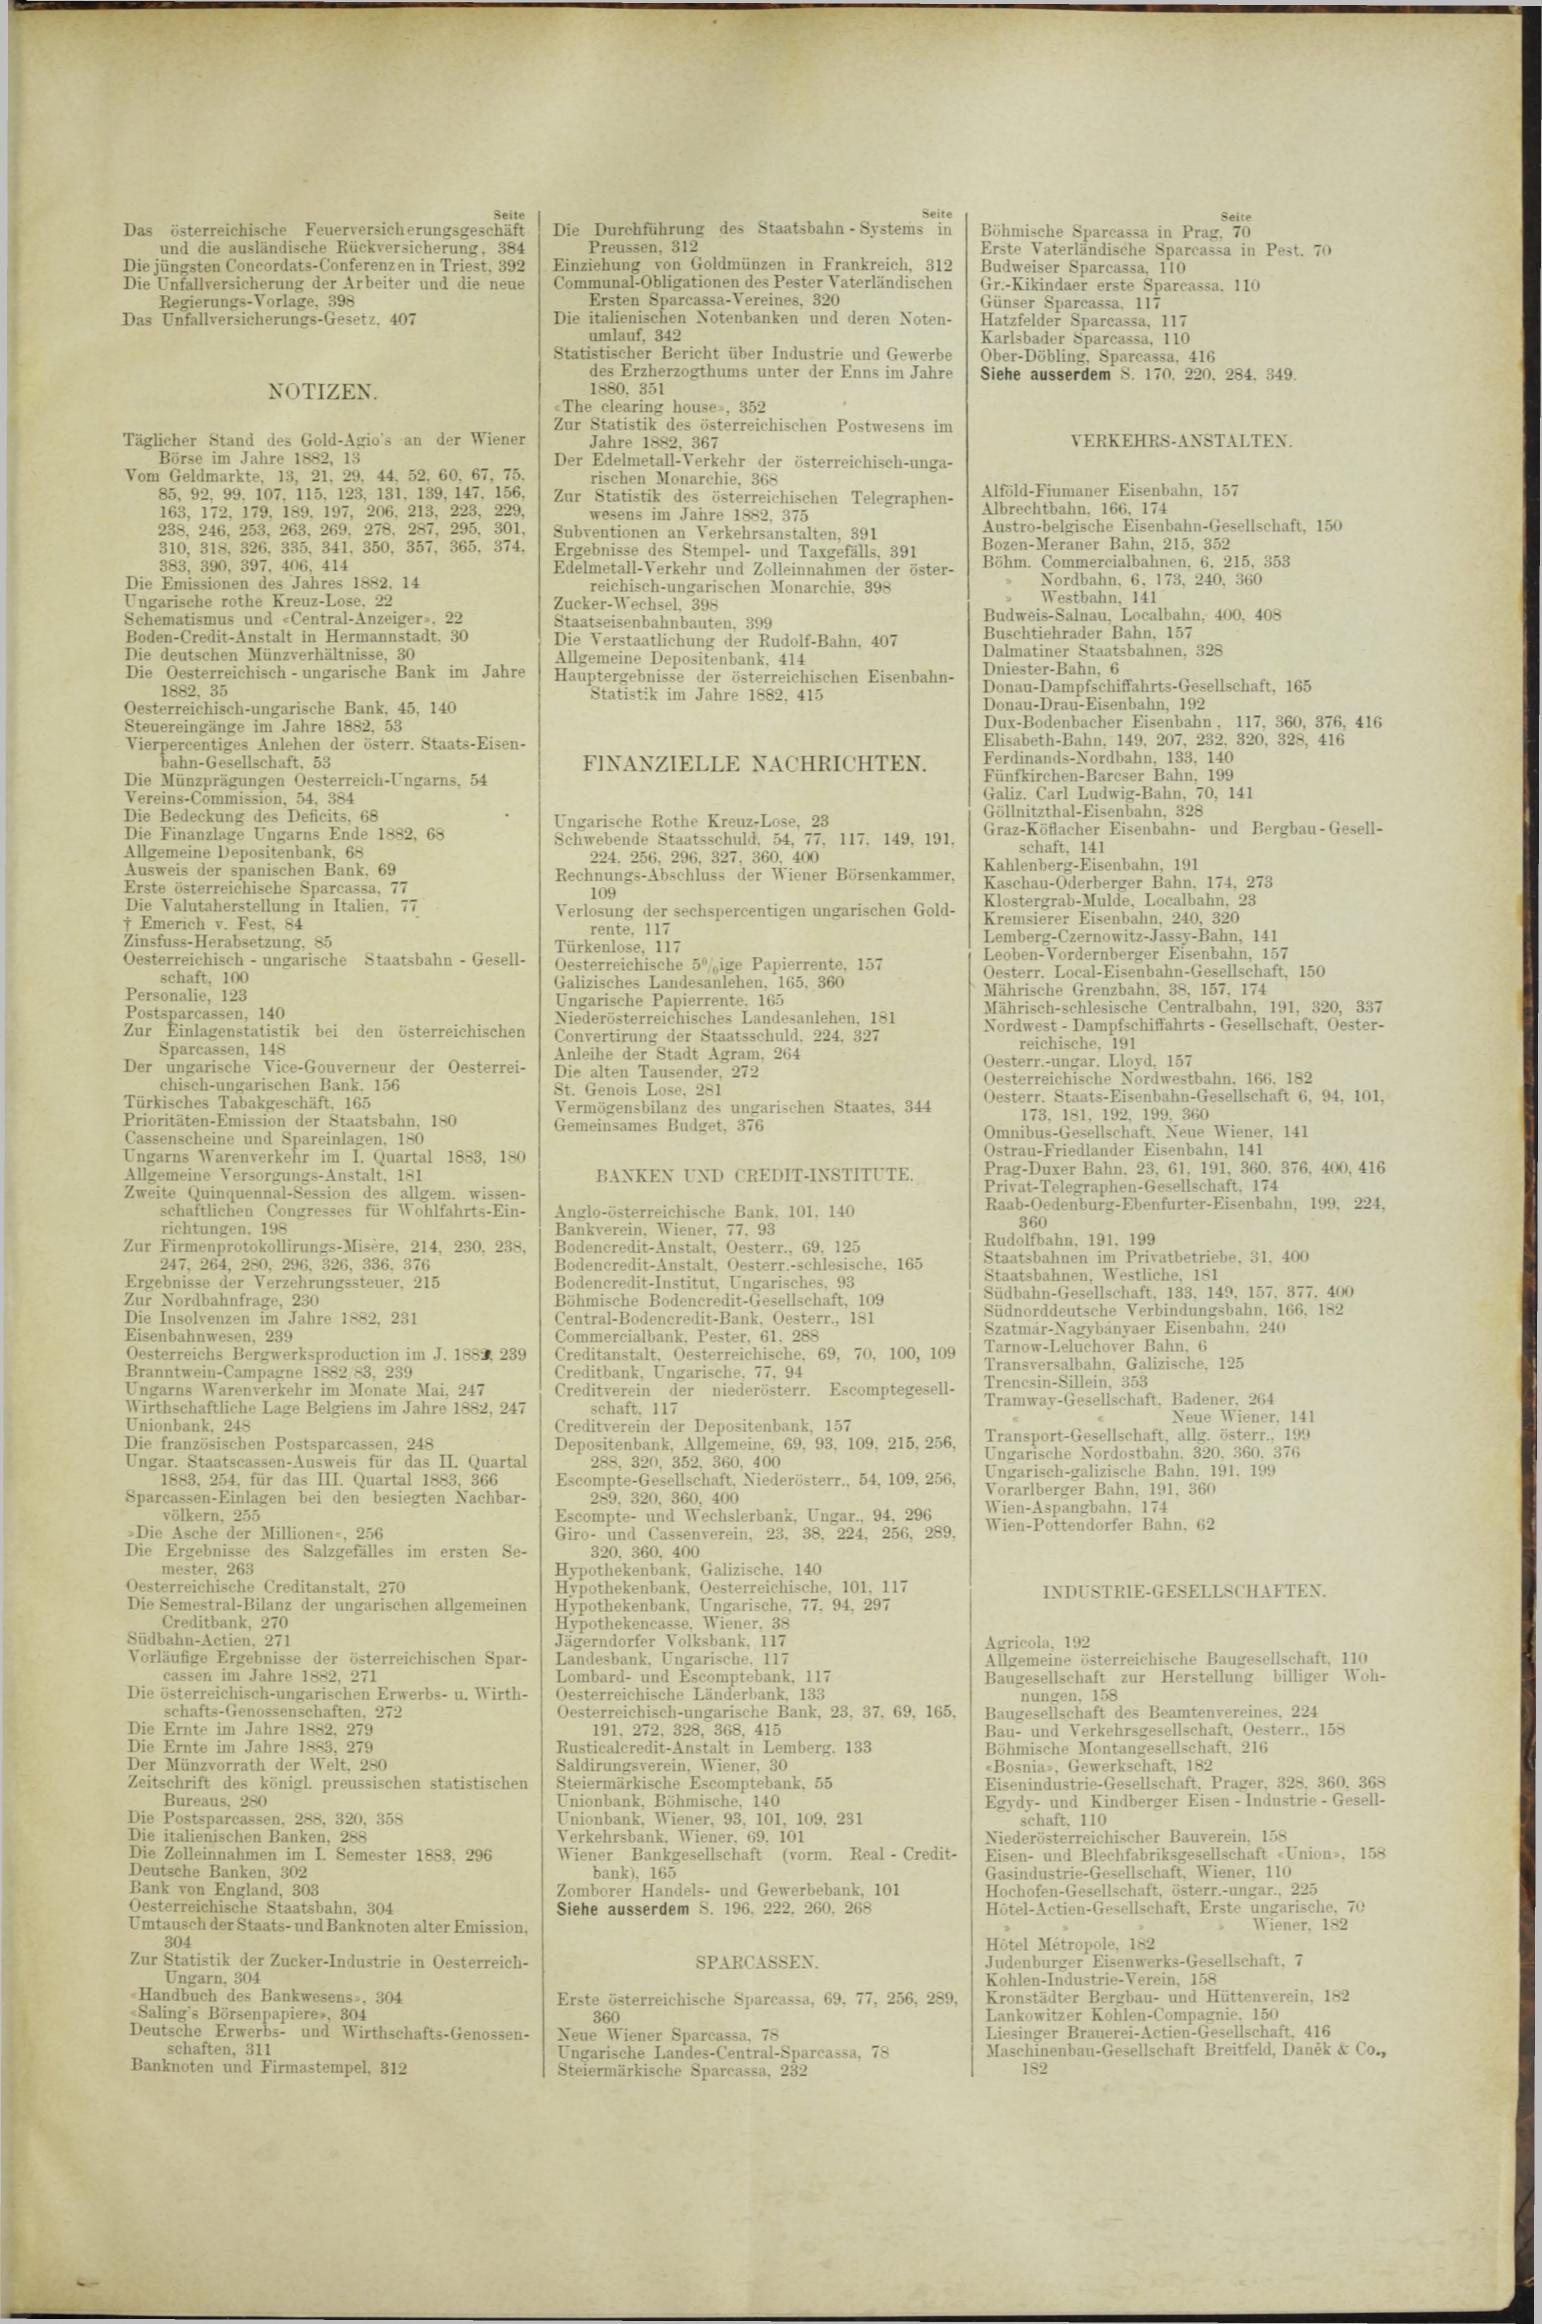 Der Tresor 14.06.1883 - Seite 11